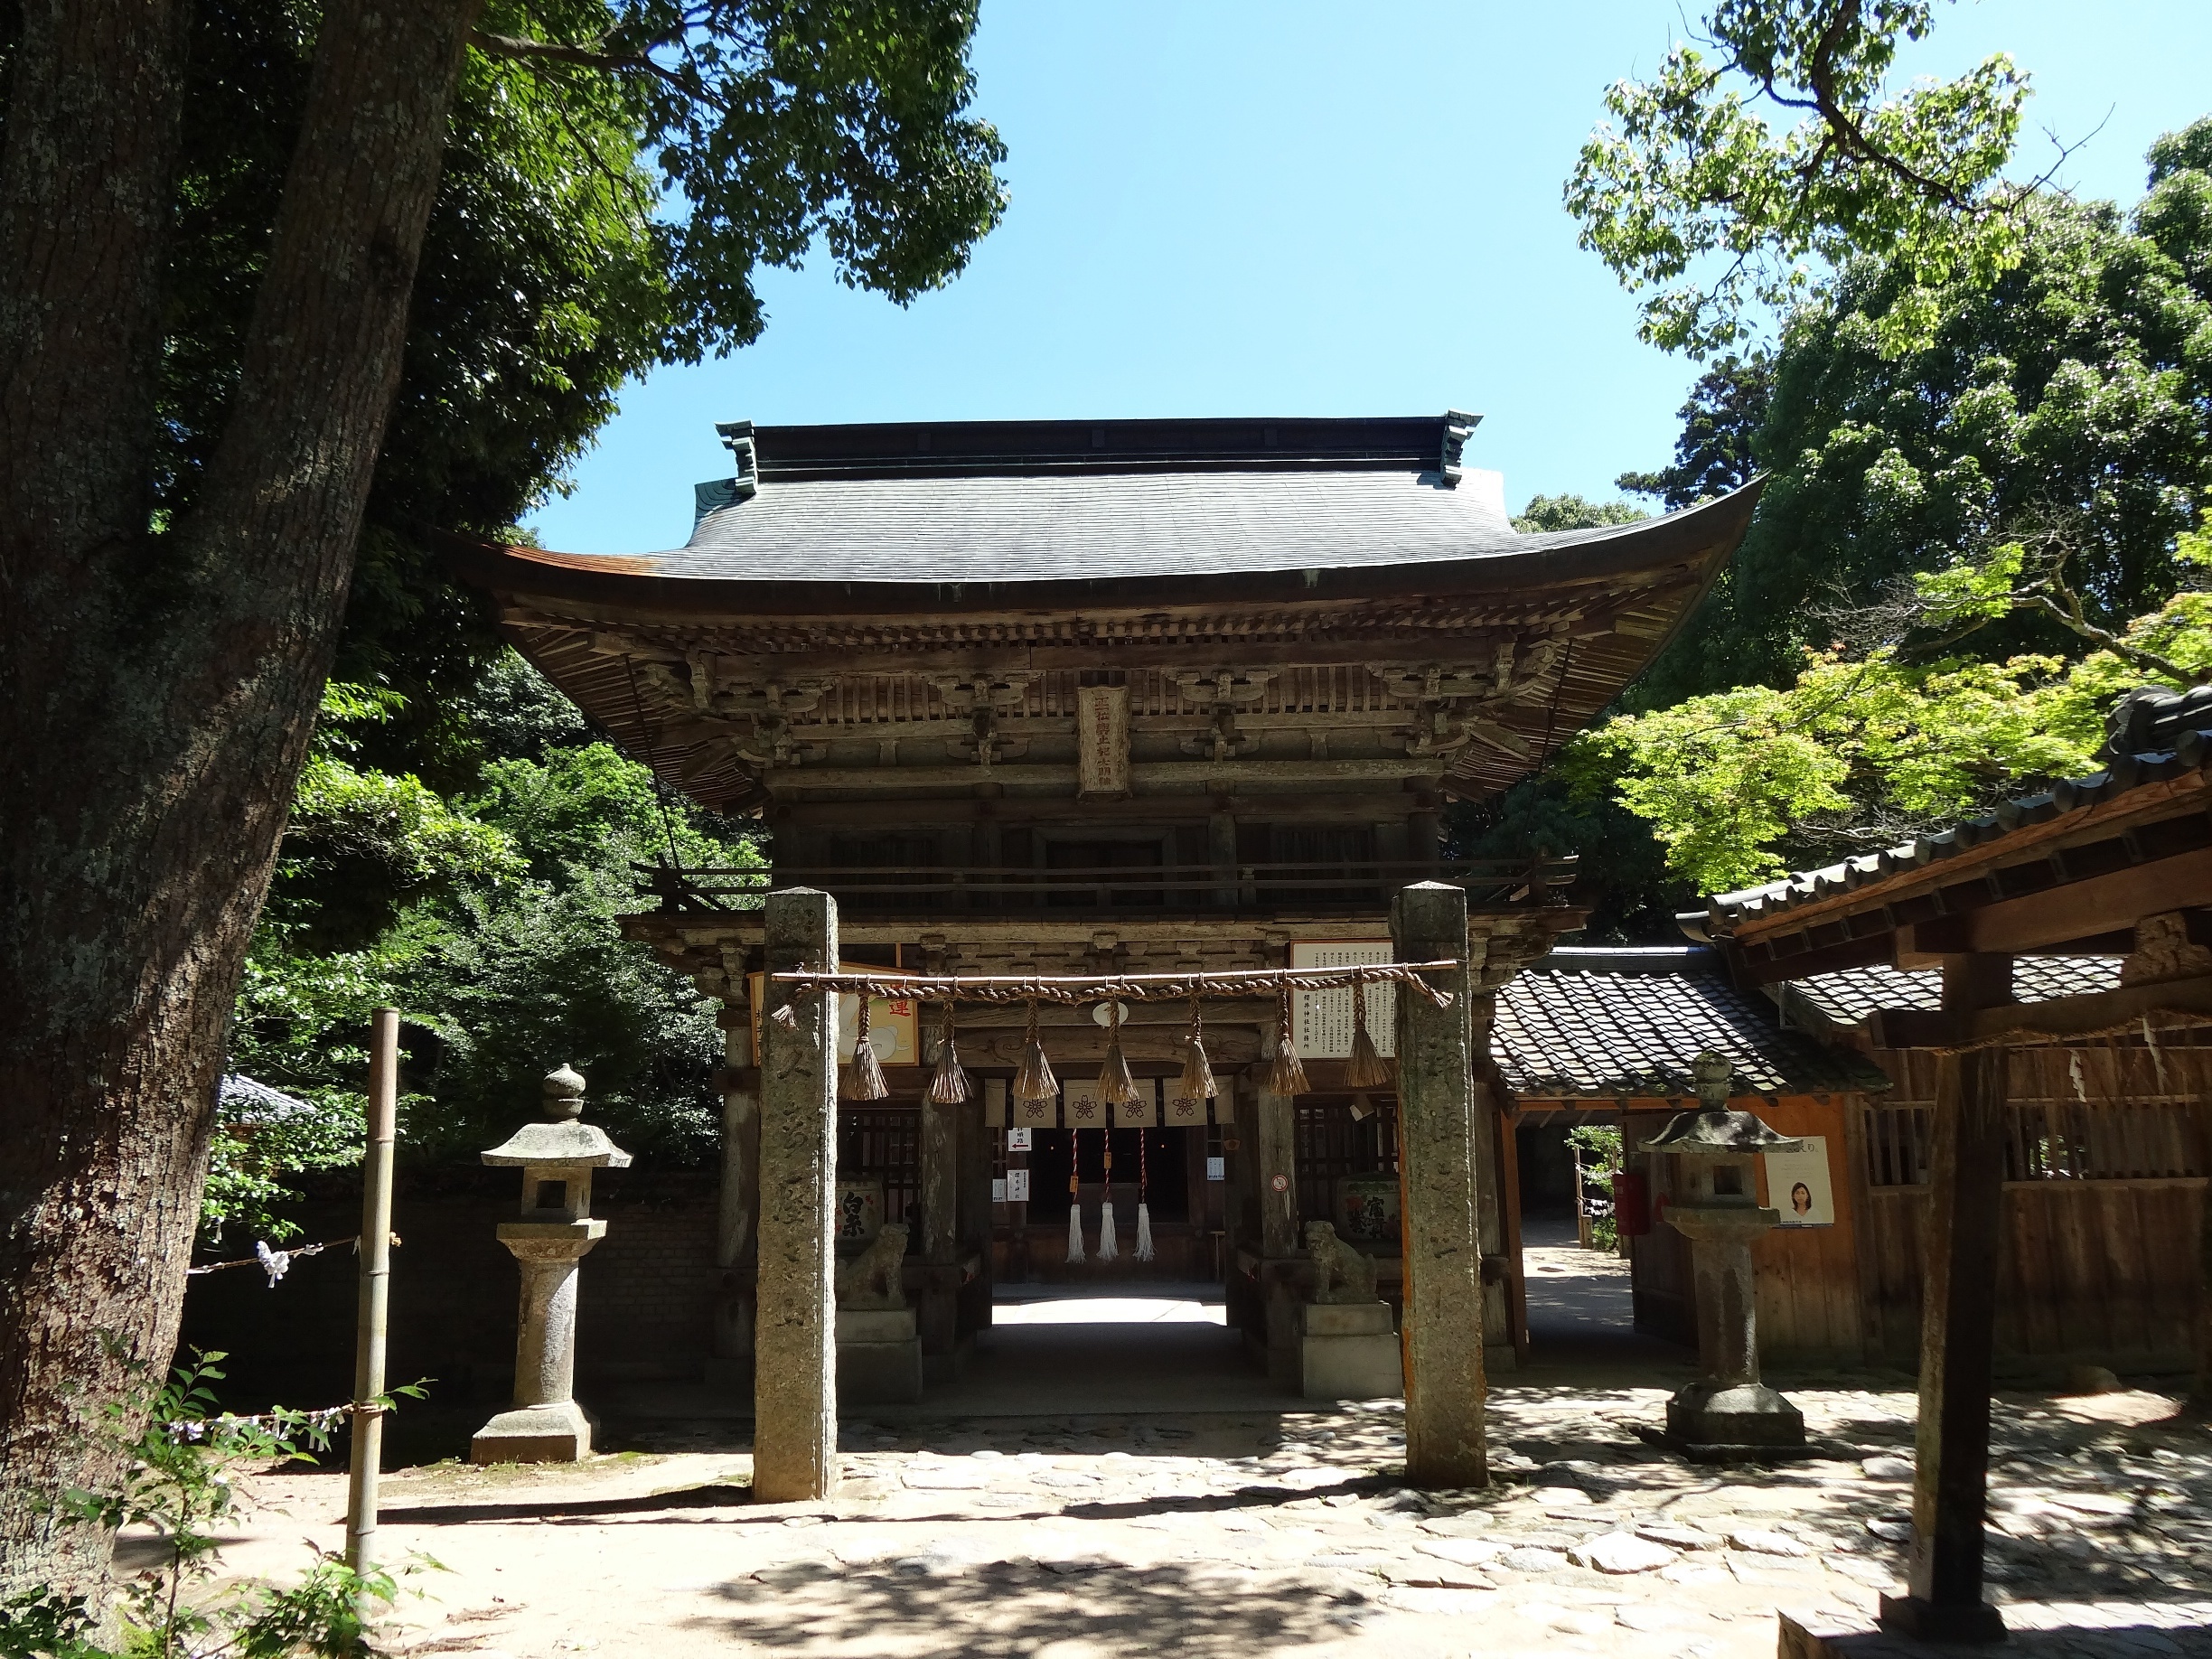 桜井神社